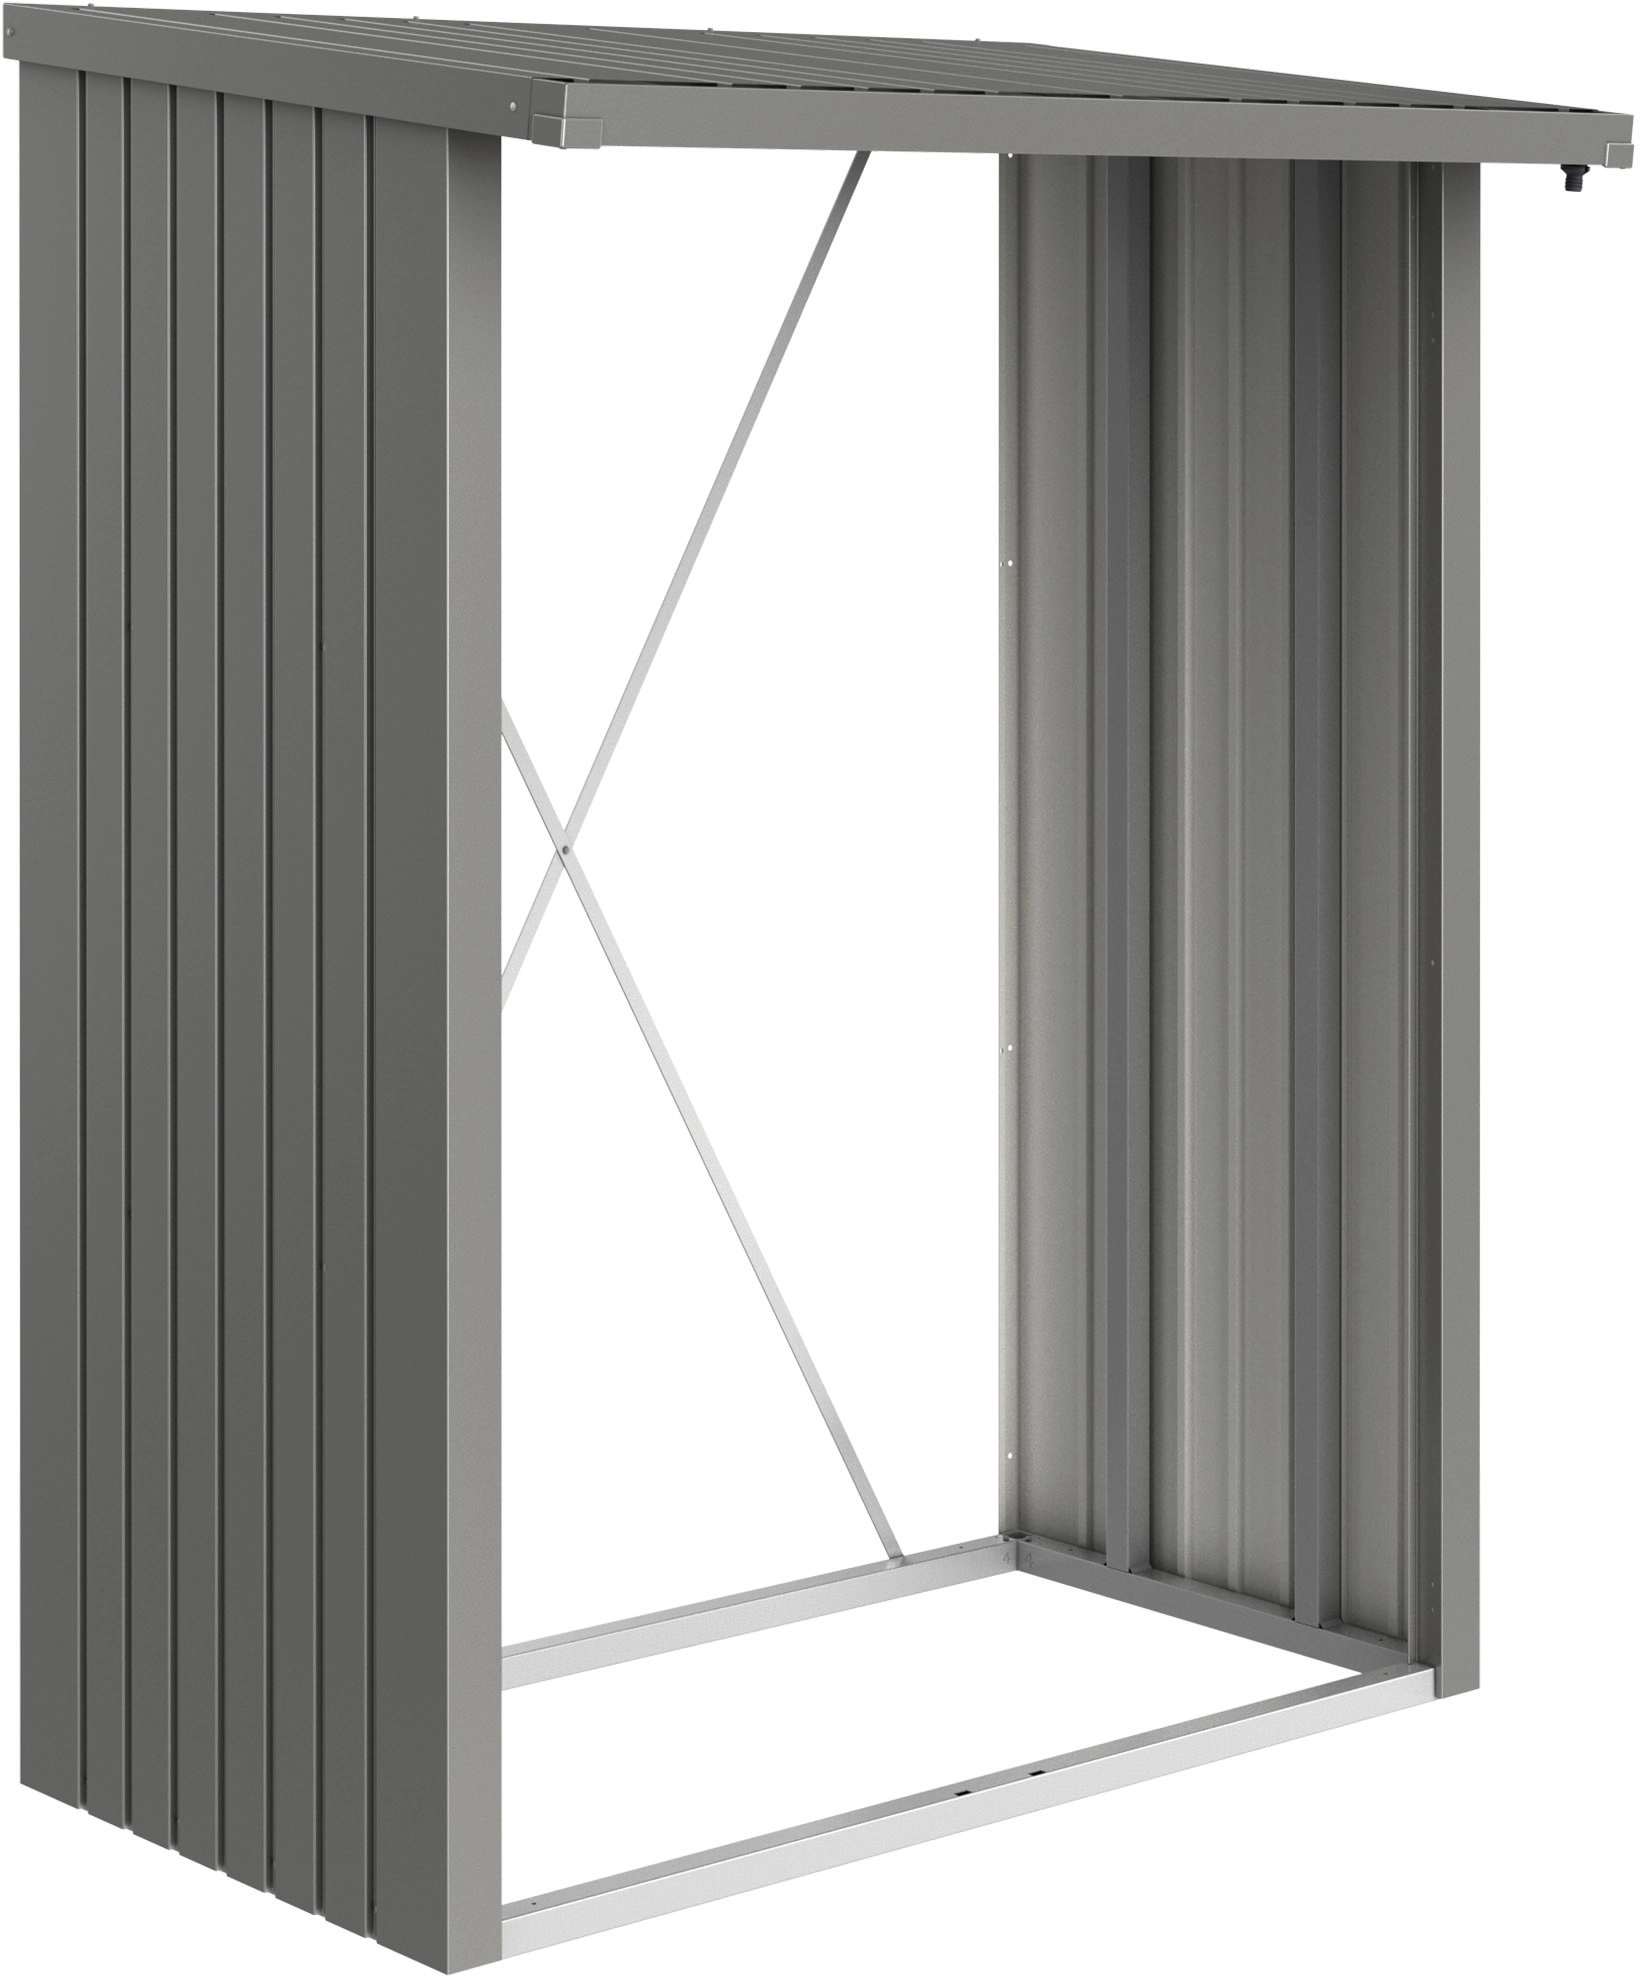 Legnaia da esterno Biohort WoodStock grigio quarzo metallizzato 157x102 cm